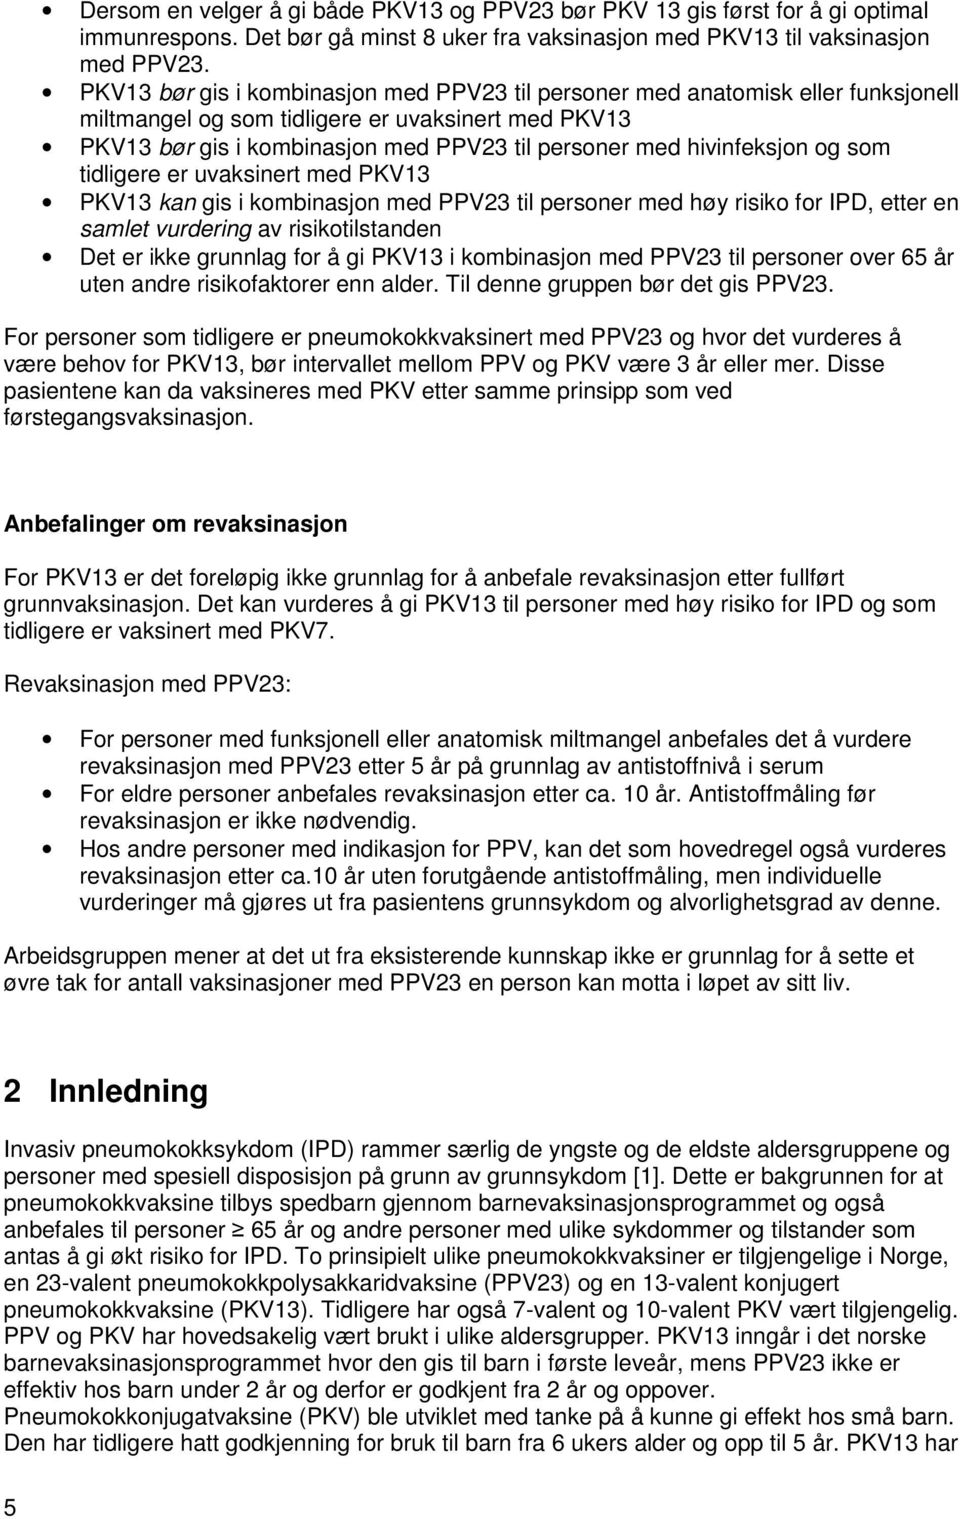 hivinfeksjon og som tidligere er uvaksinert med PKV13 PKV13 kan gis i kombinasjon med PPV23 til personer med høy risiko for IPD, etter en samlet vurdering av risikotilstanden Det er ikke grunnlag for